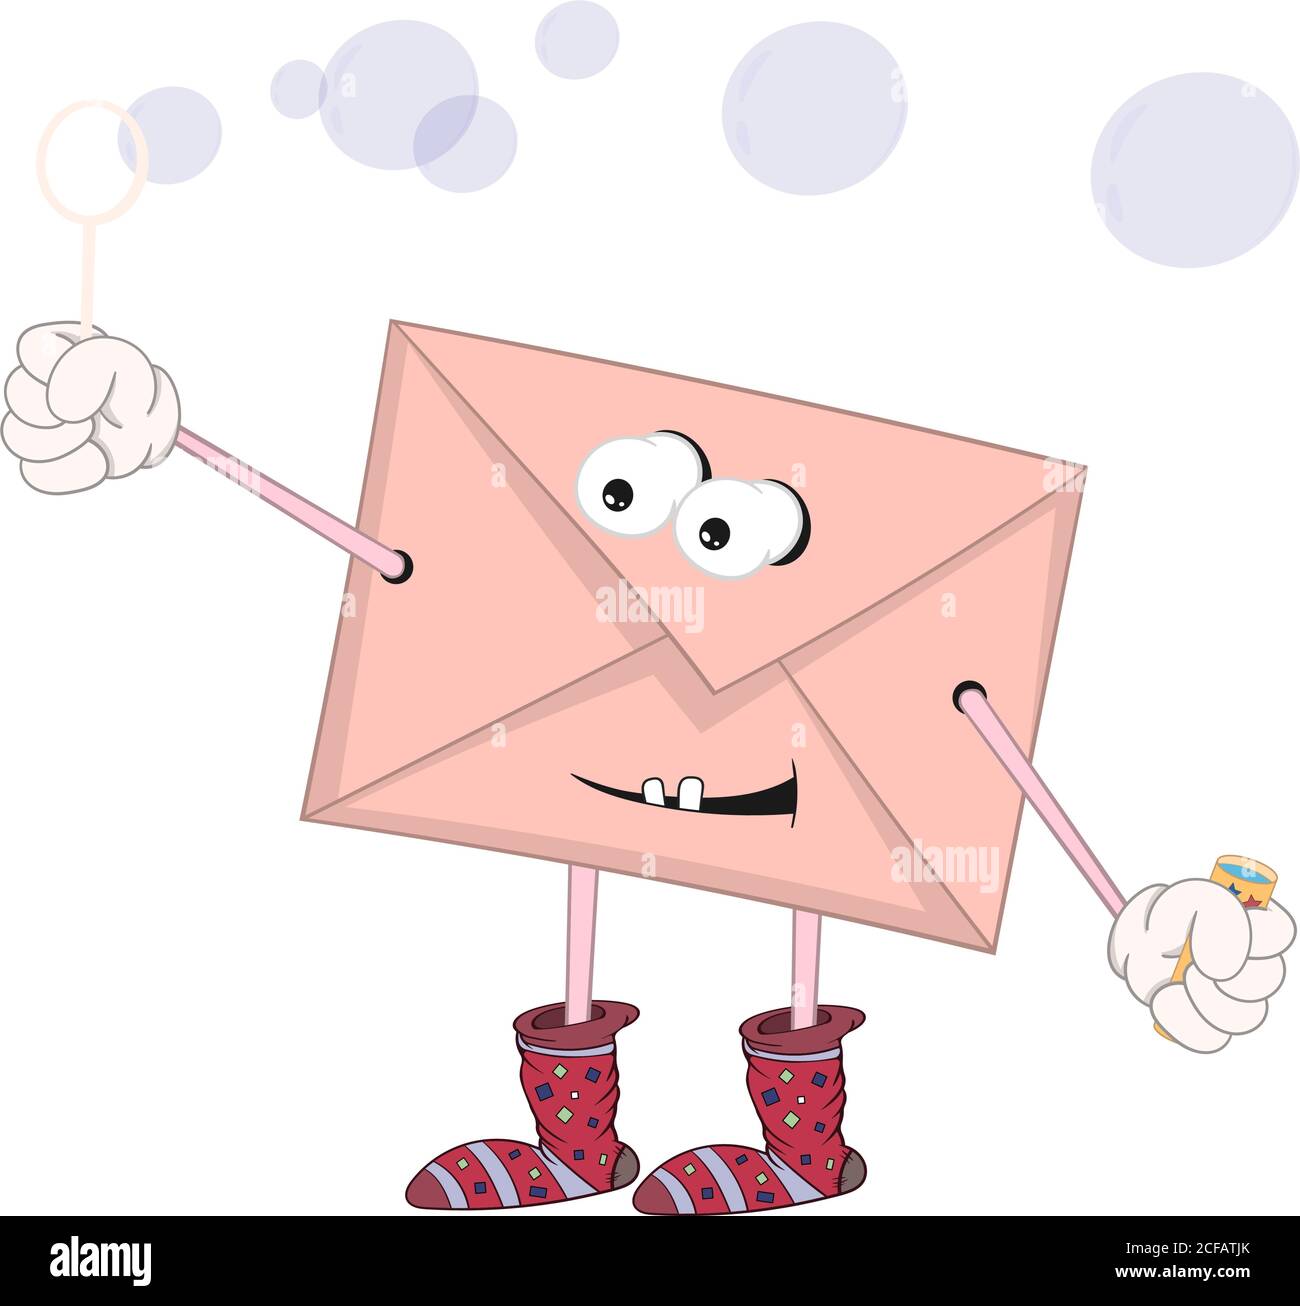 Lustige Cartoon Umschlag mit Augen, Füße und Hände Blasen  Stock-Vektorgrafik - Alamy